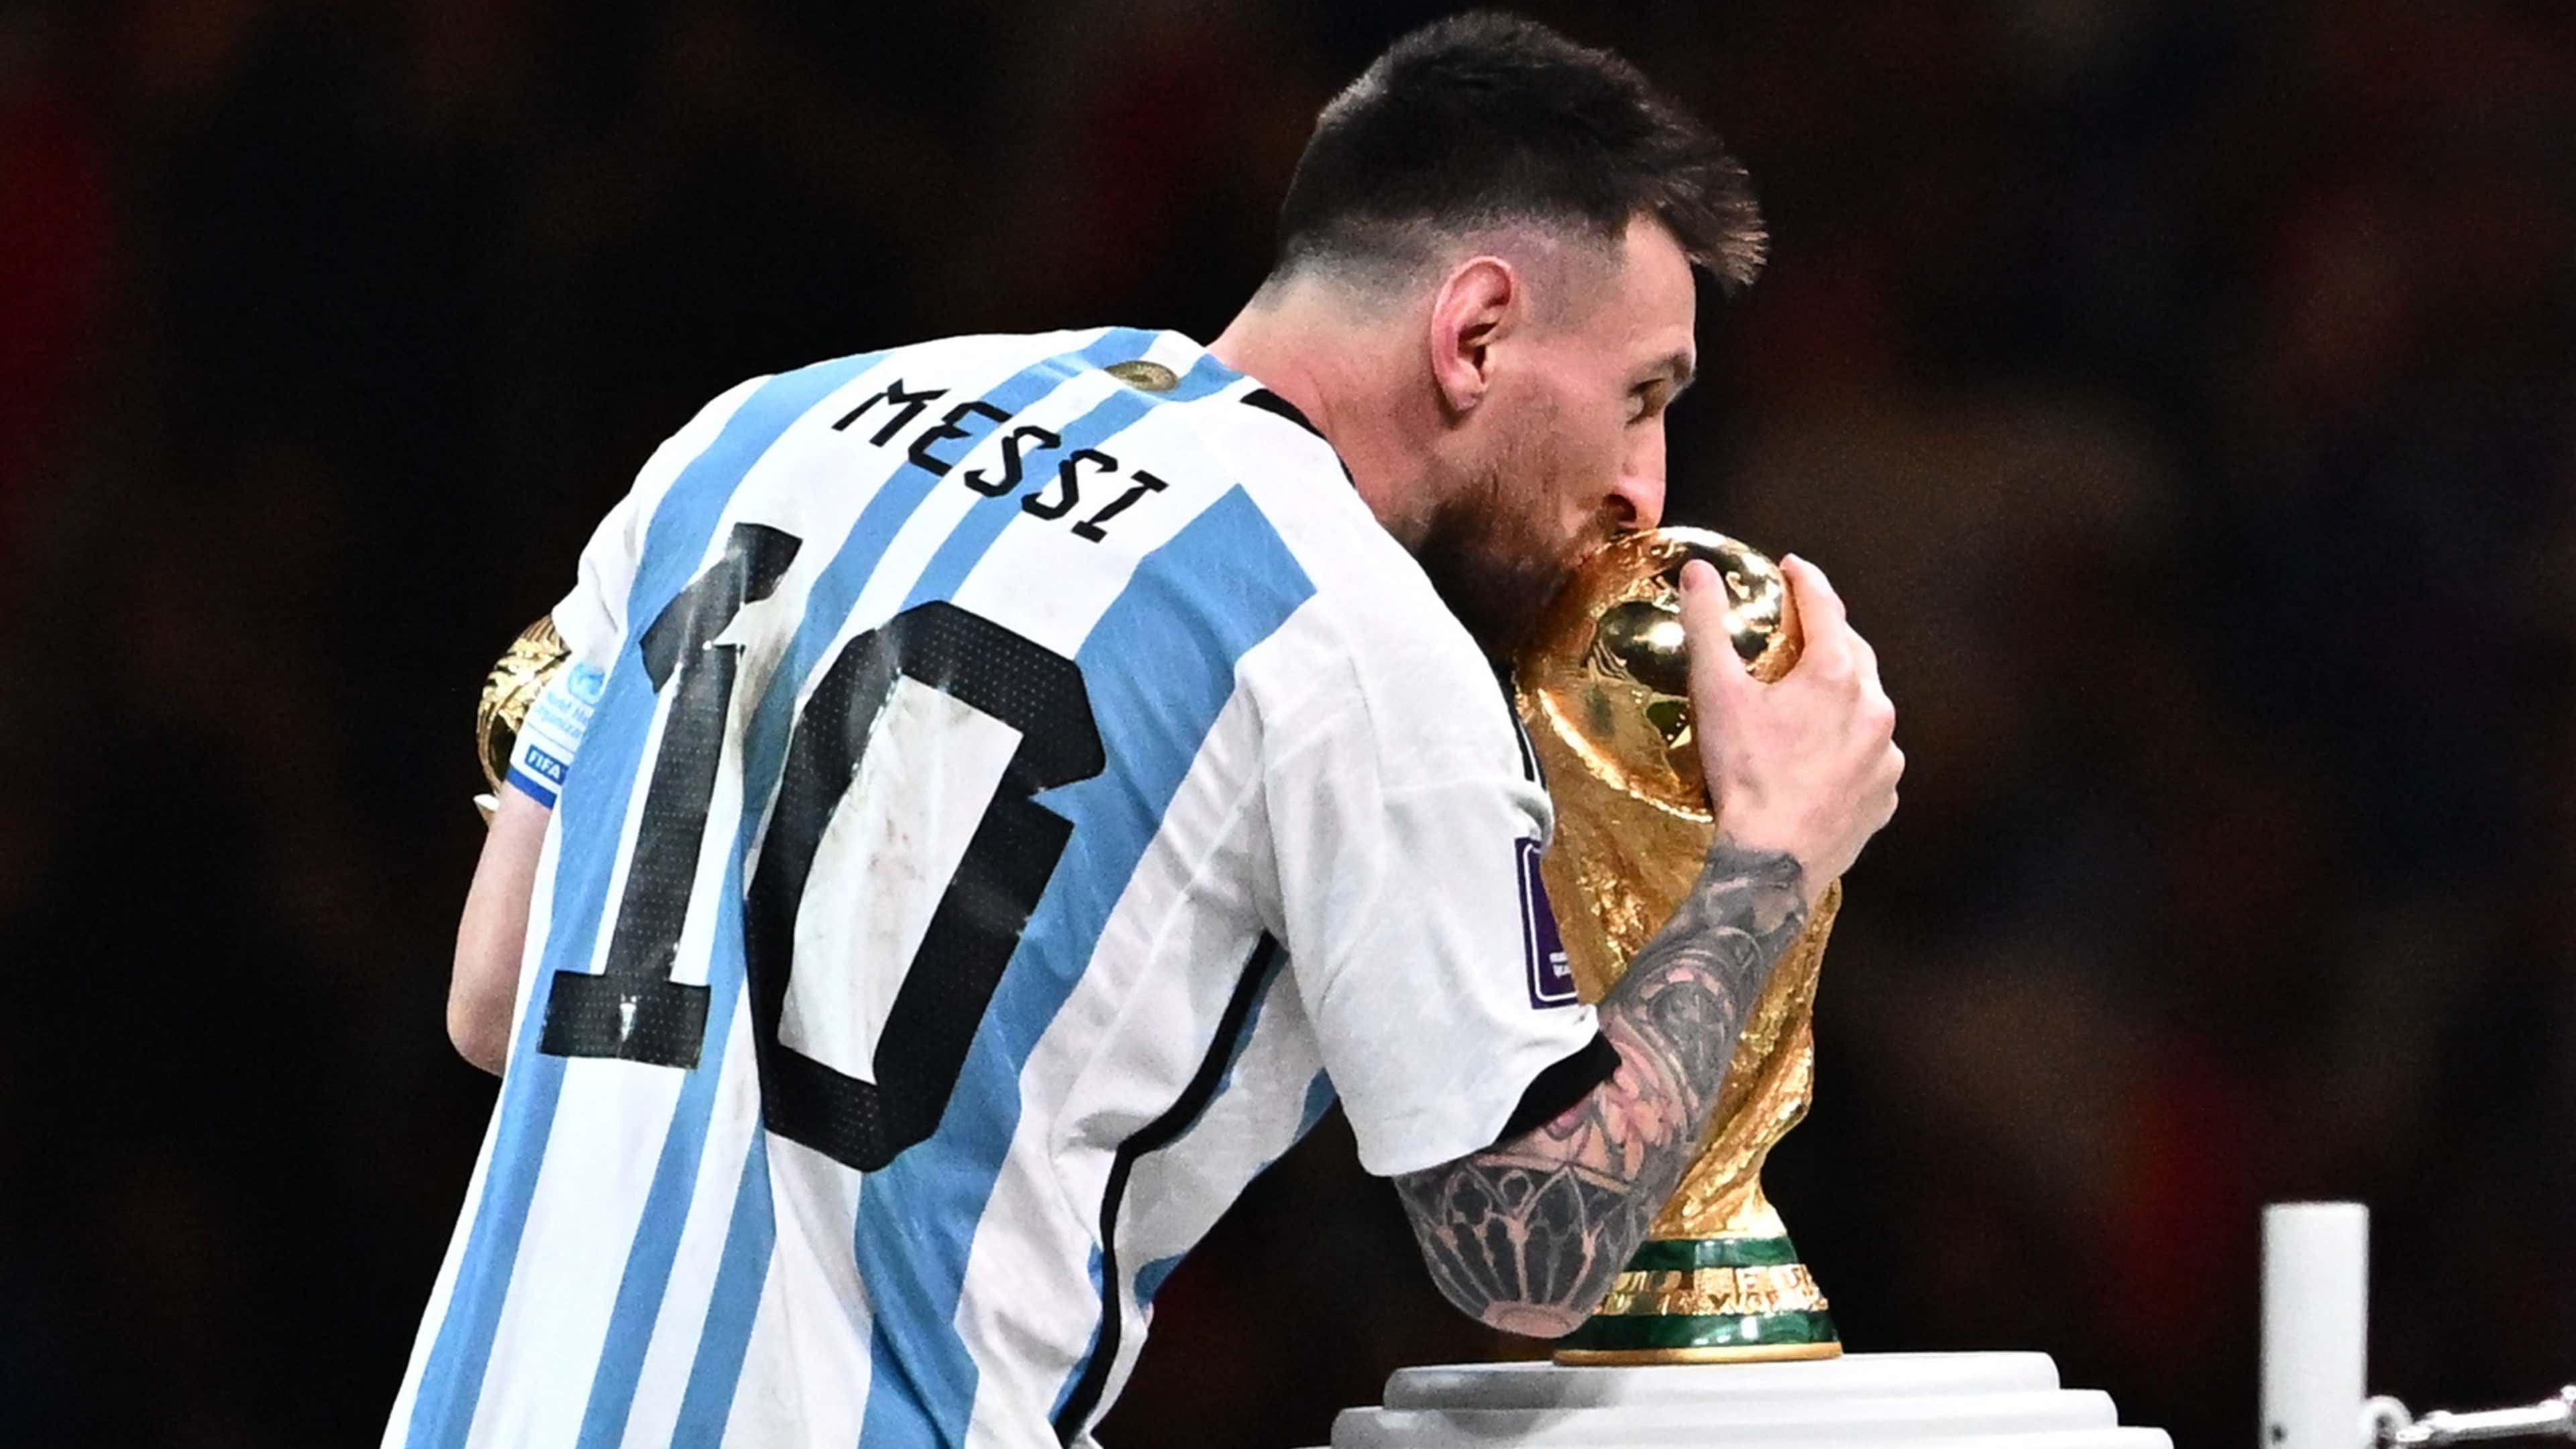 Lionel Messi anunció que sigue en la Selección argentina "Quiero